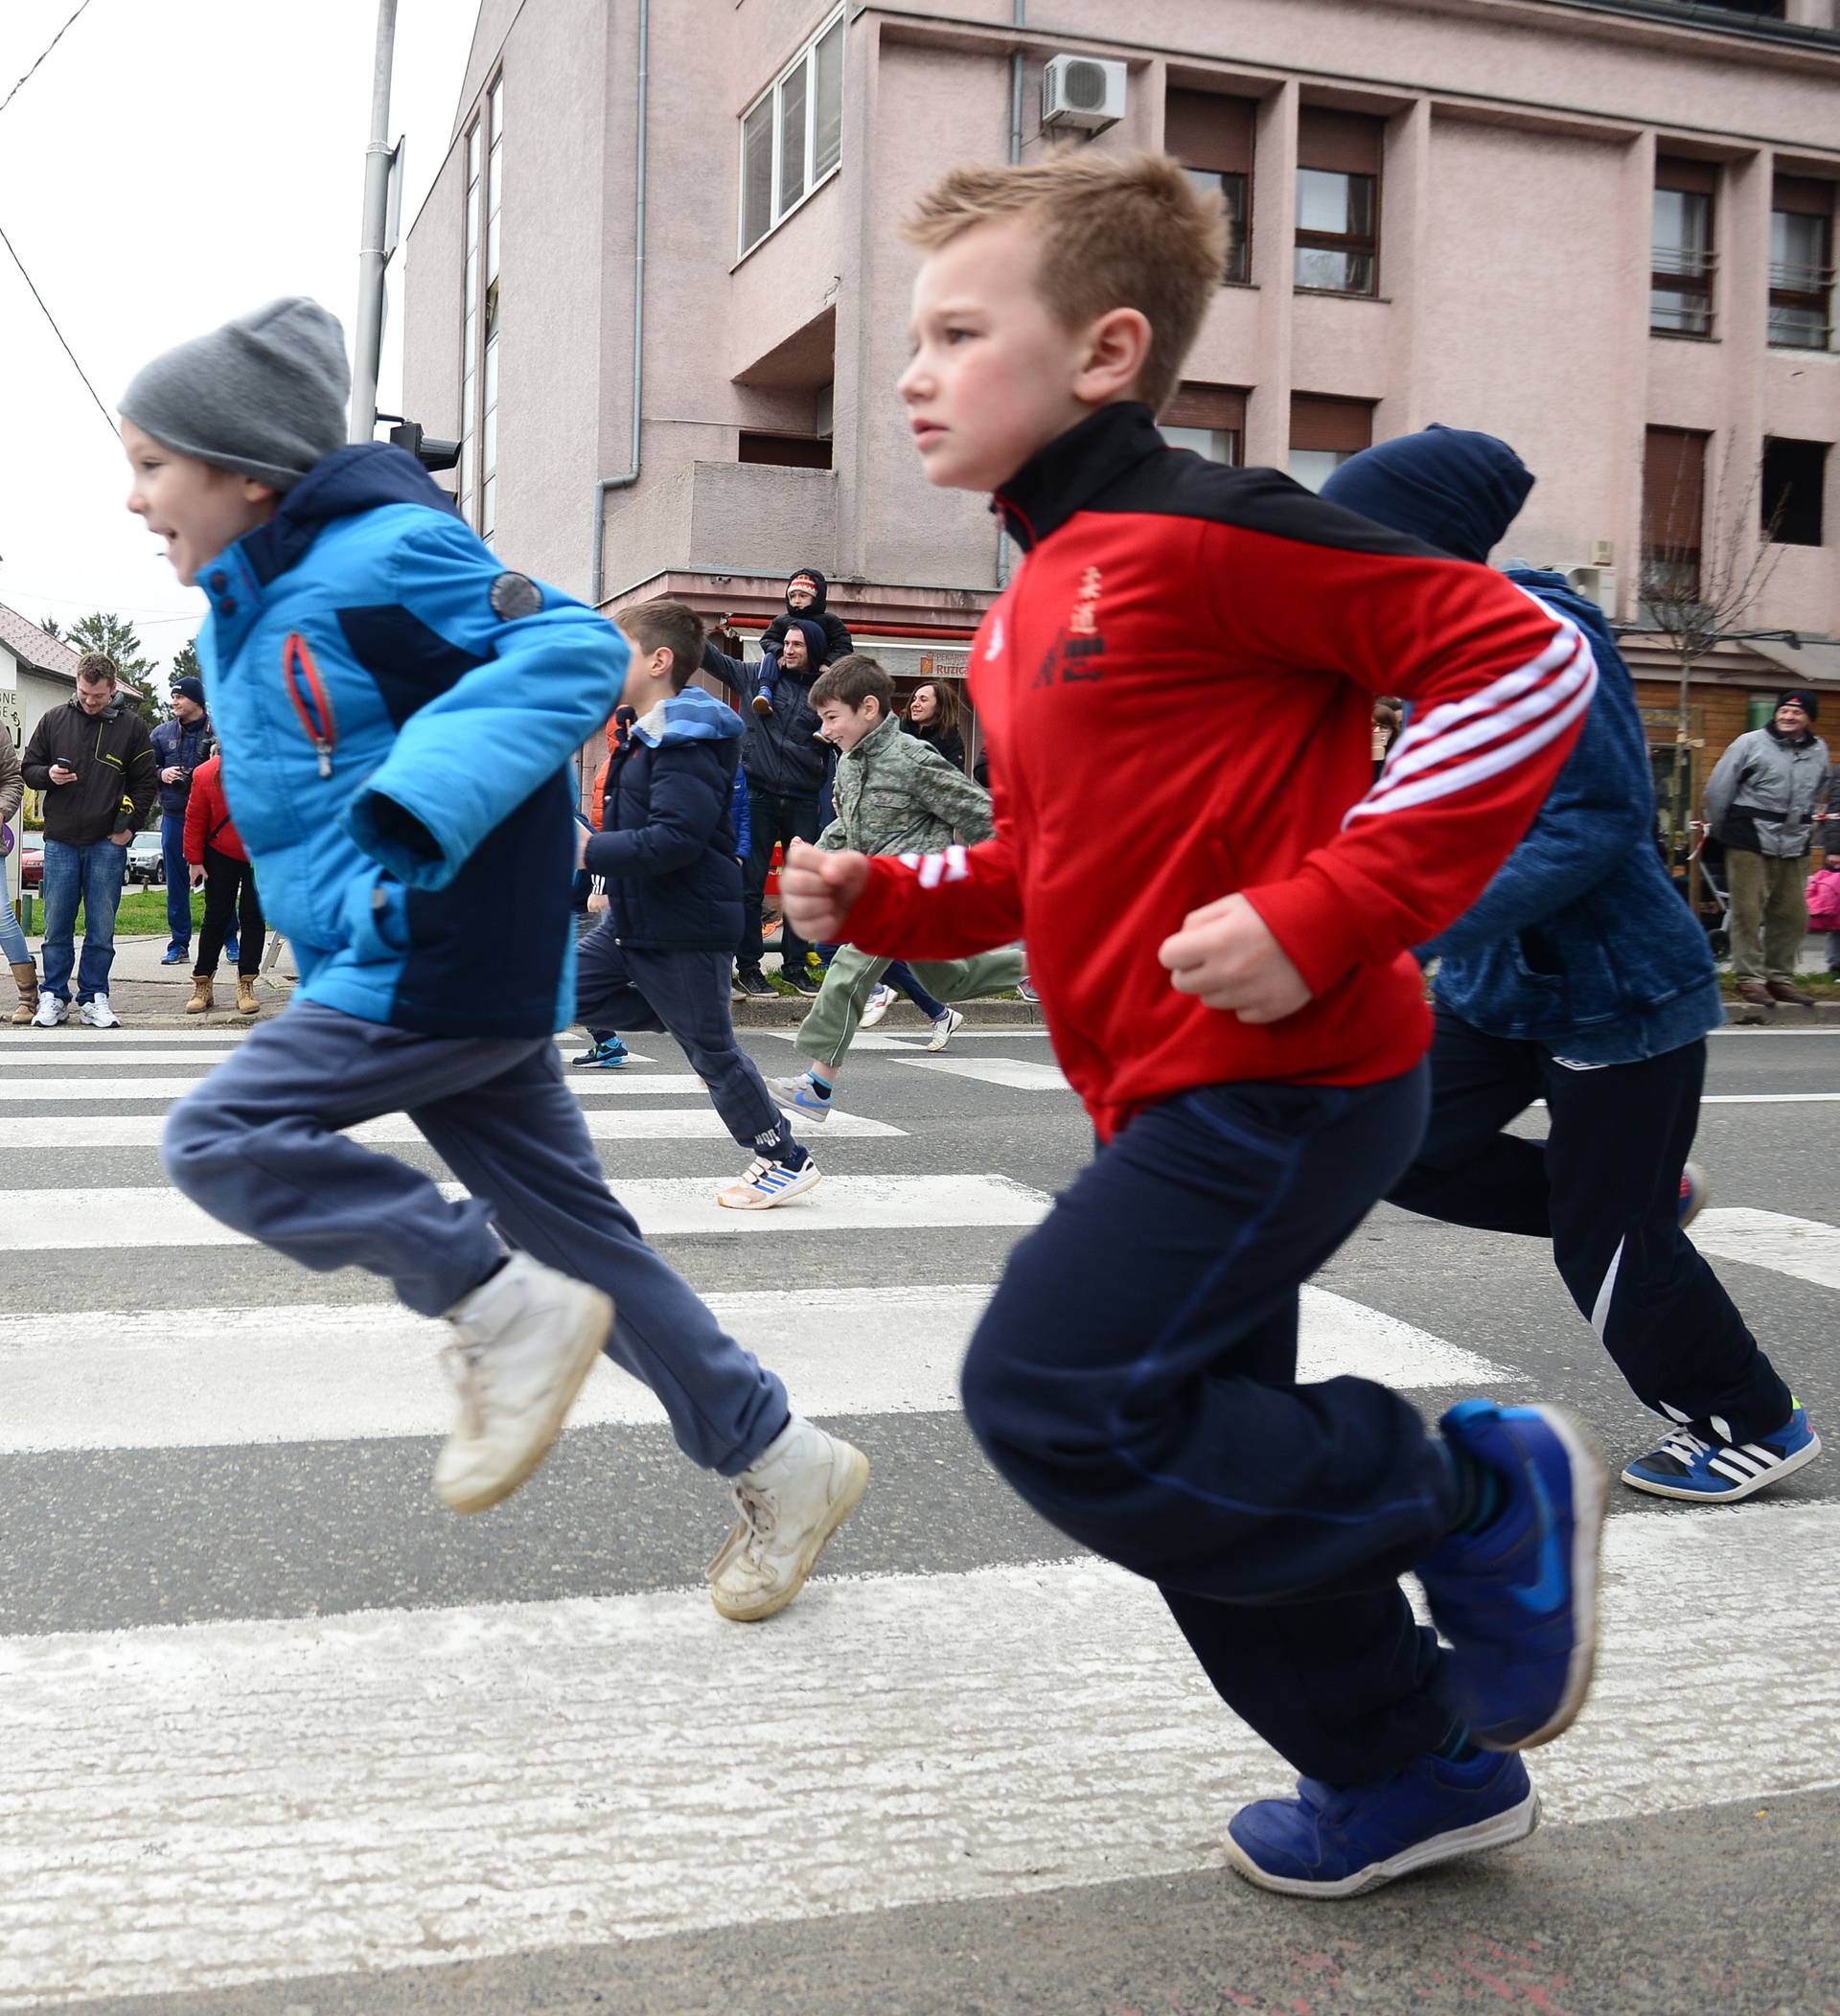 25. Turopoljska trka - četvrt stoljeća tradicije trčanja